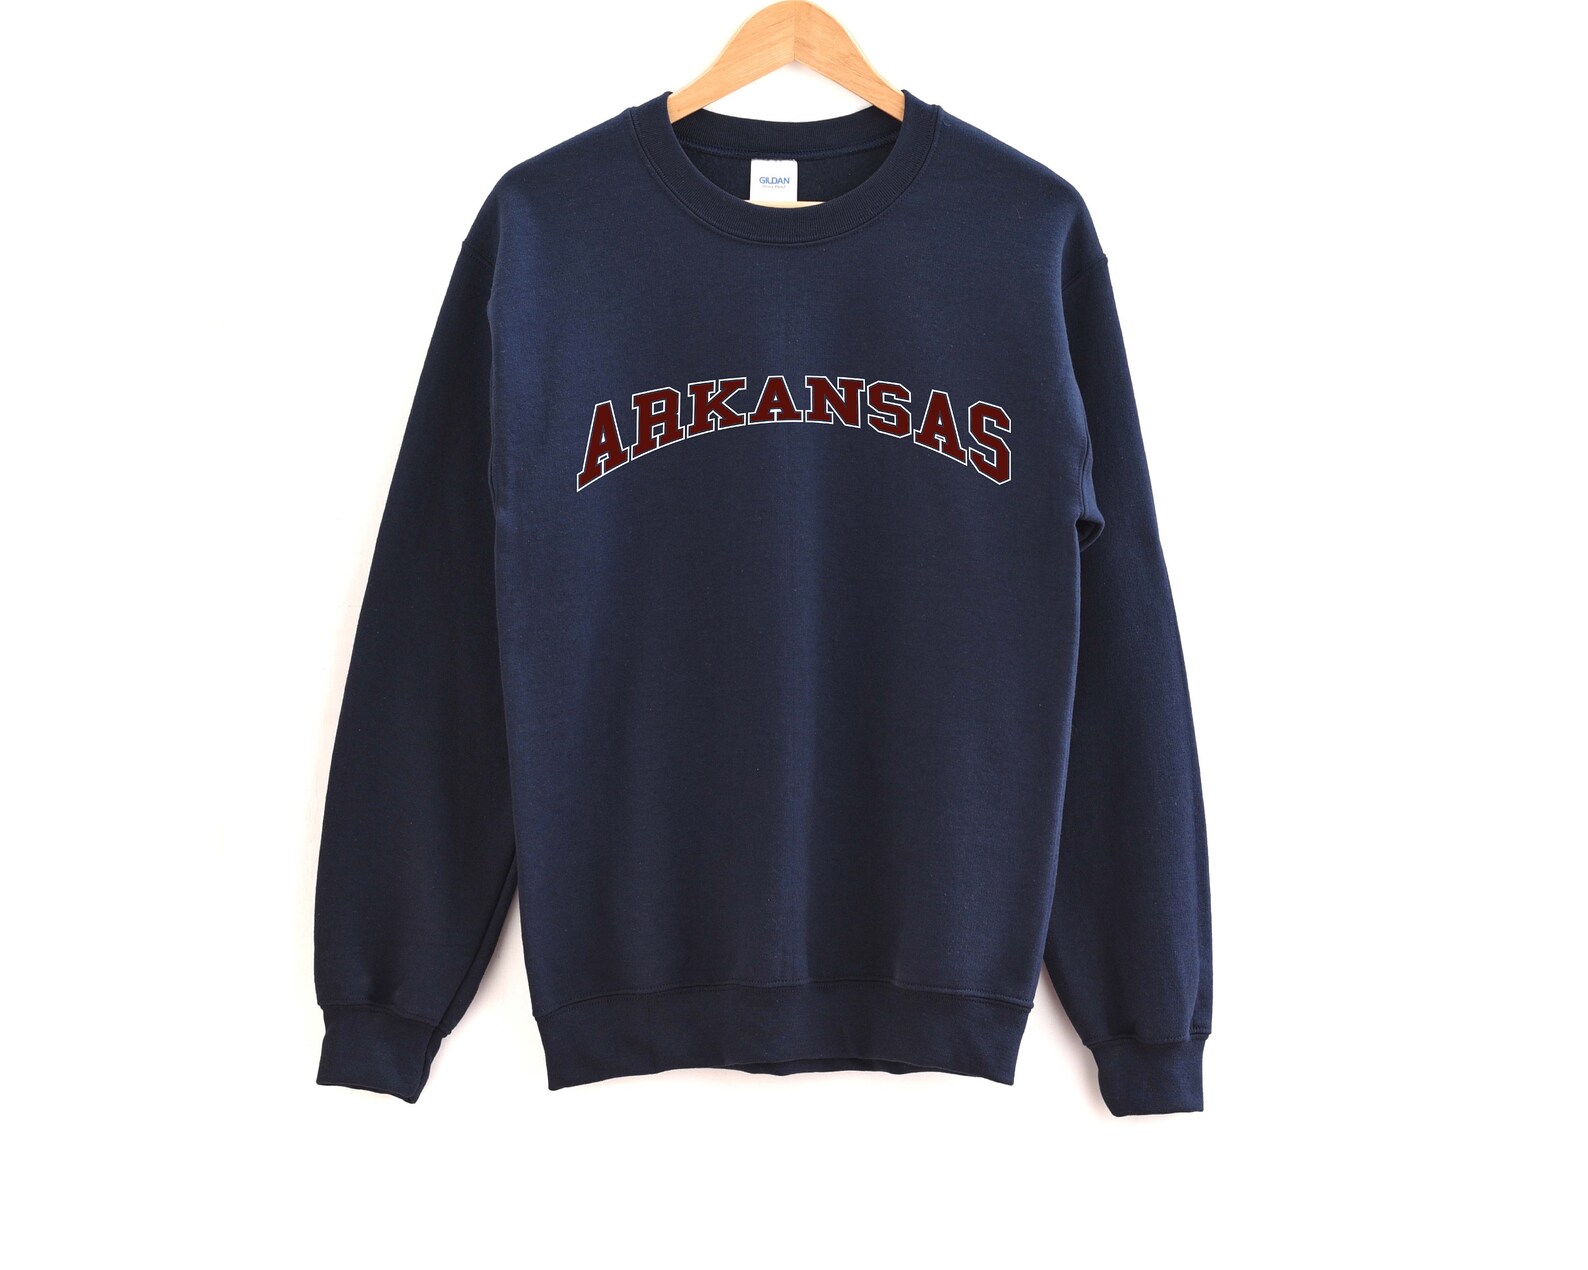 Arkansas Sweatshirt Unisex Vintage Arkansas Crewneck | Etsy